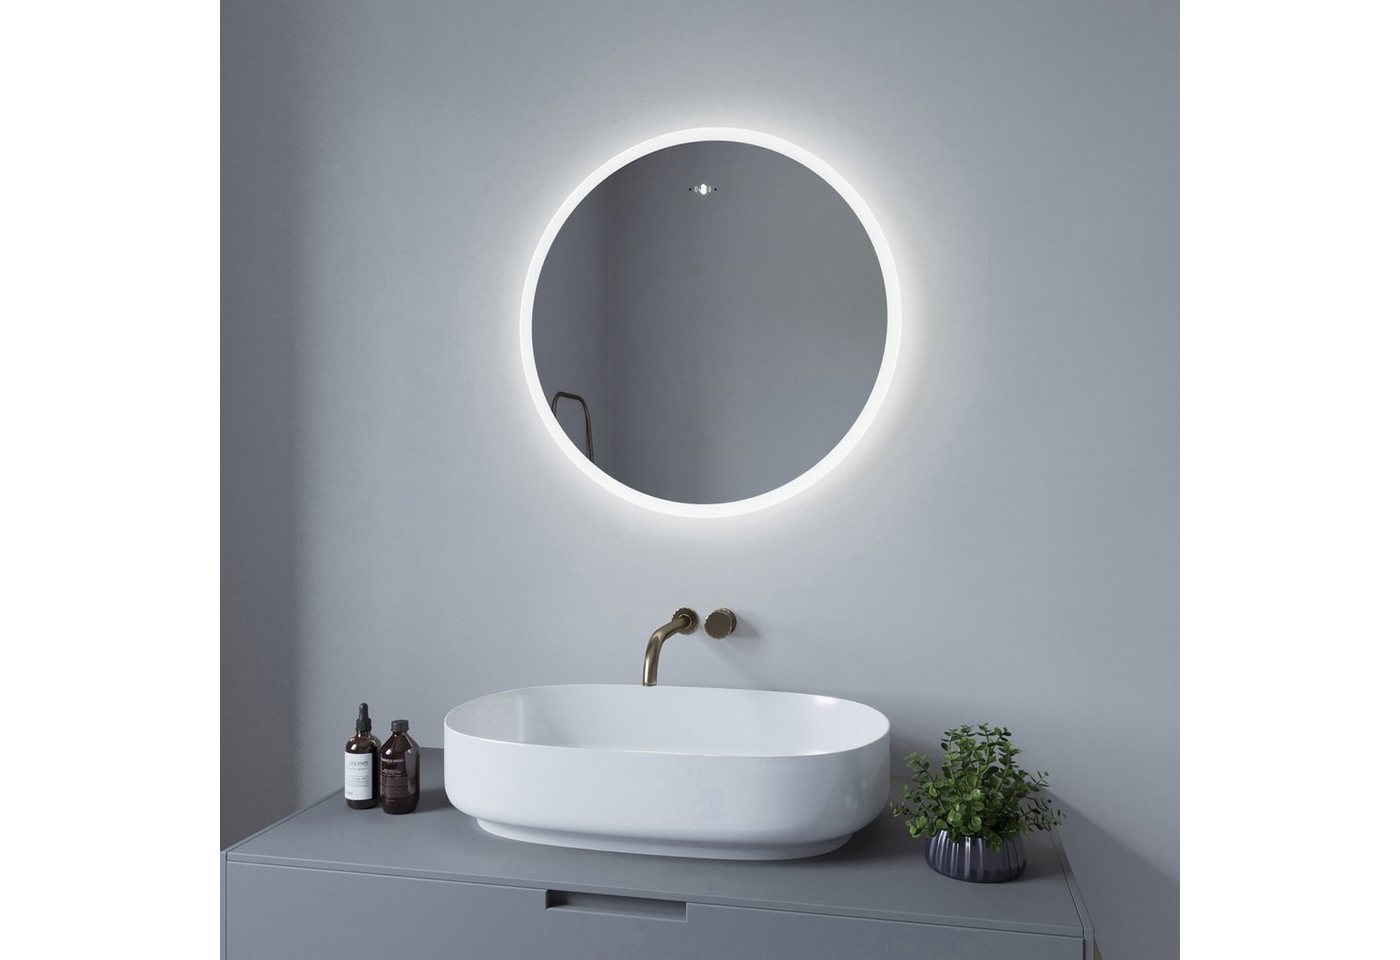 AQUALAVOS Badspiegel LED Rund Badspiegel mit Beleuchtung IR-Sensor Badezimmer Wandspiegel, Kaltweiß 6400K Lichtfarbe, Dimmbar, Energiesparend, Beschlagfrei von AQUALAVOS